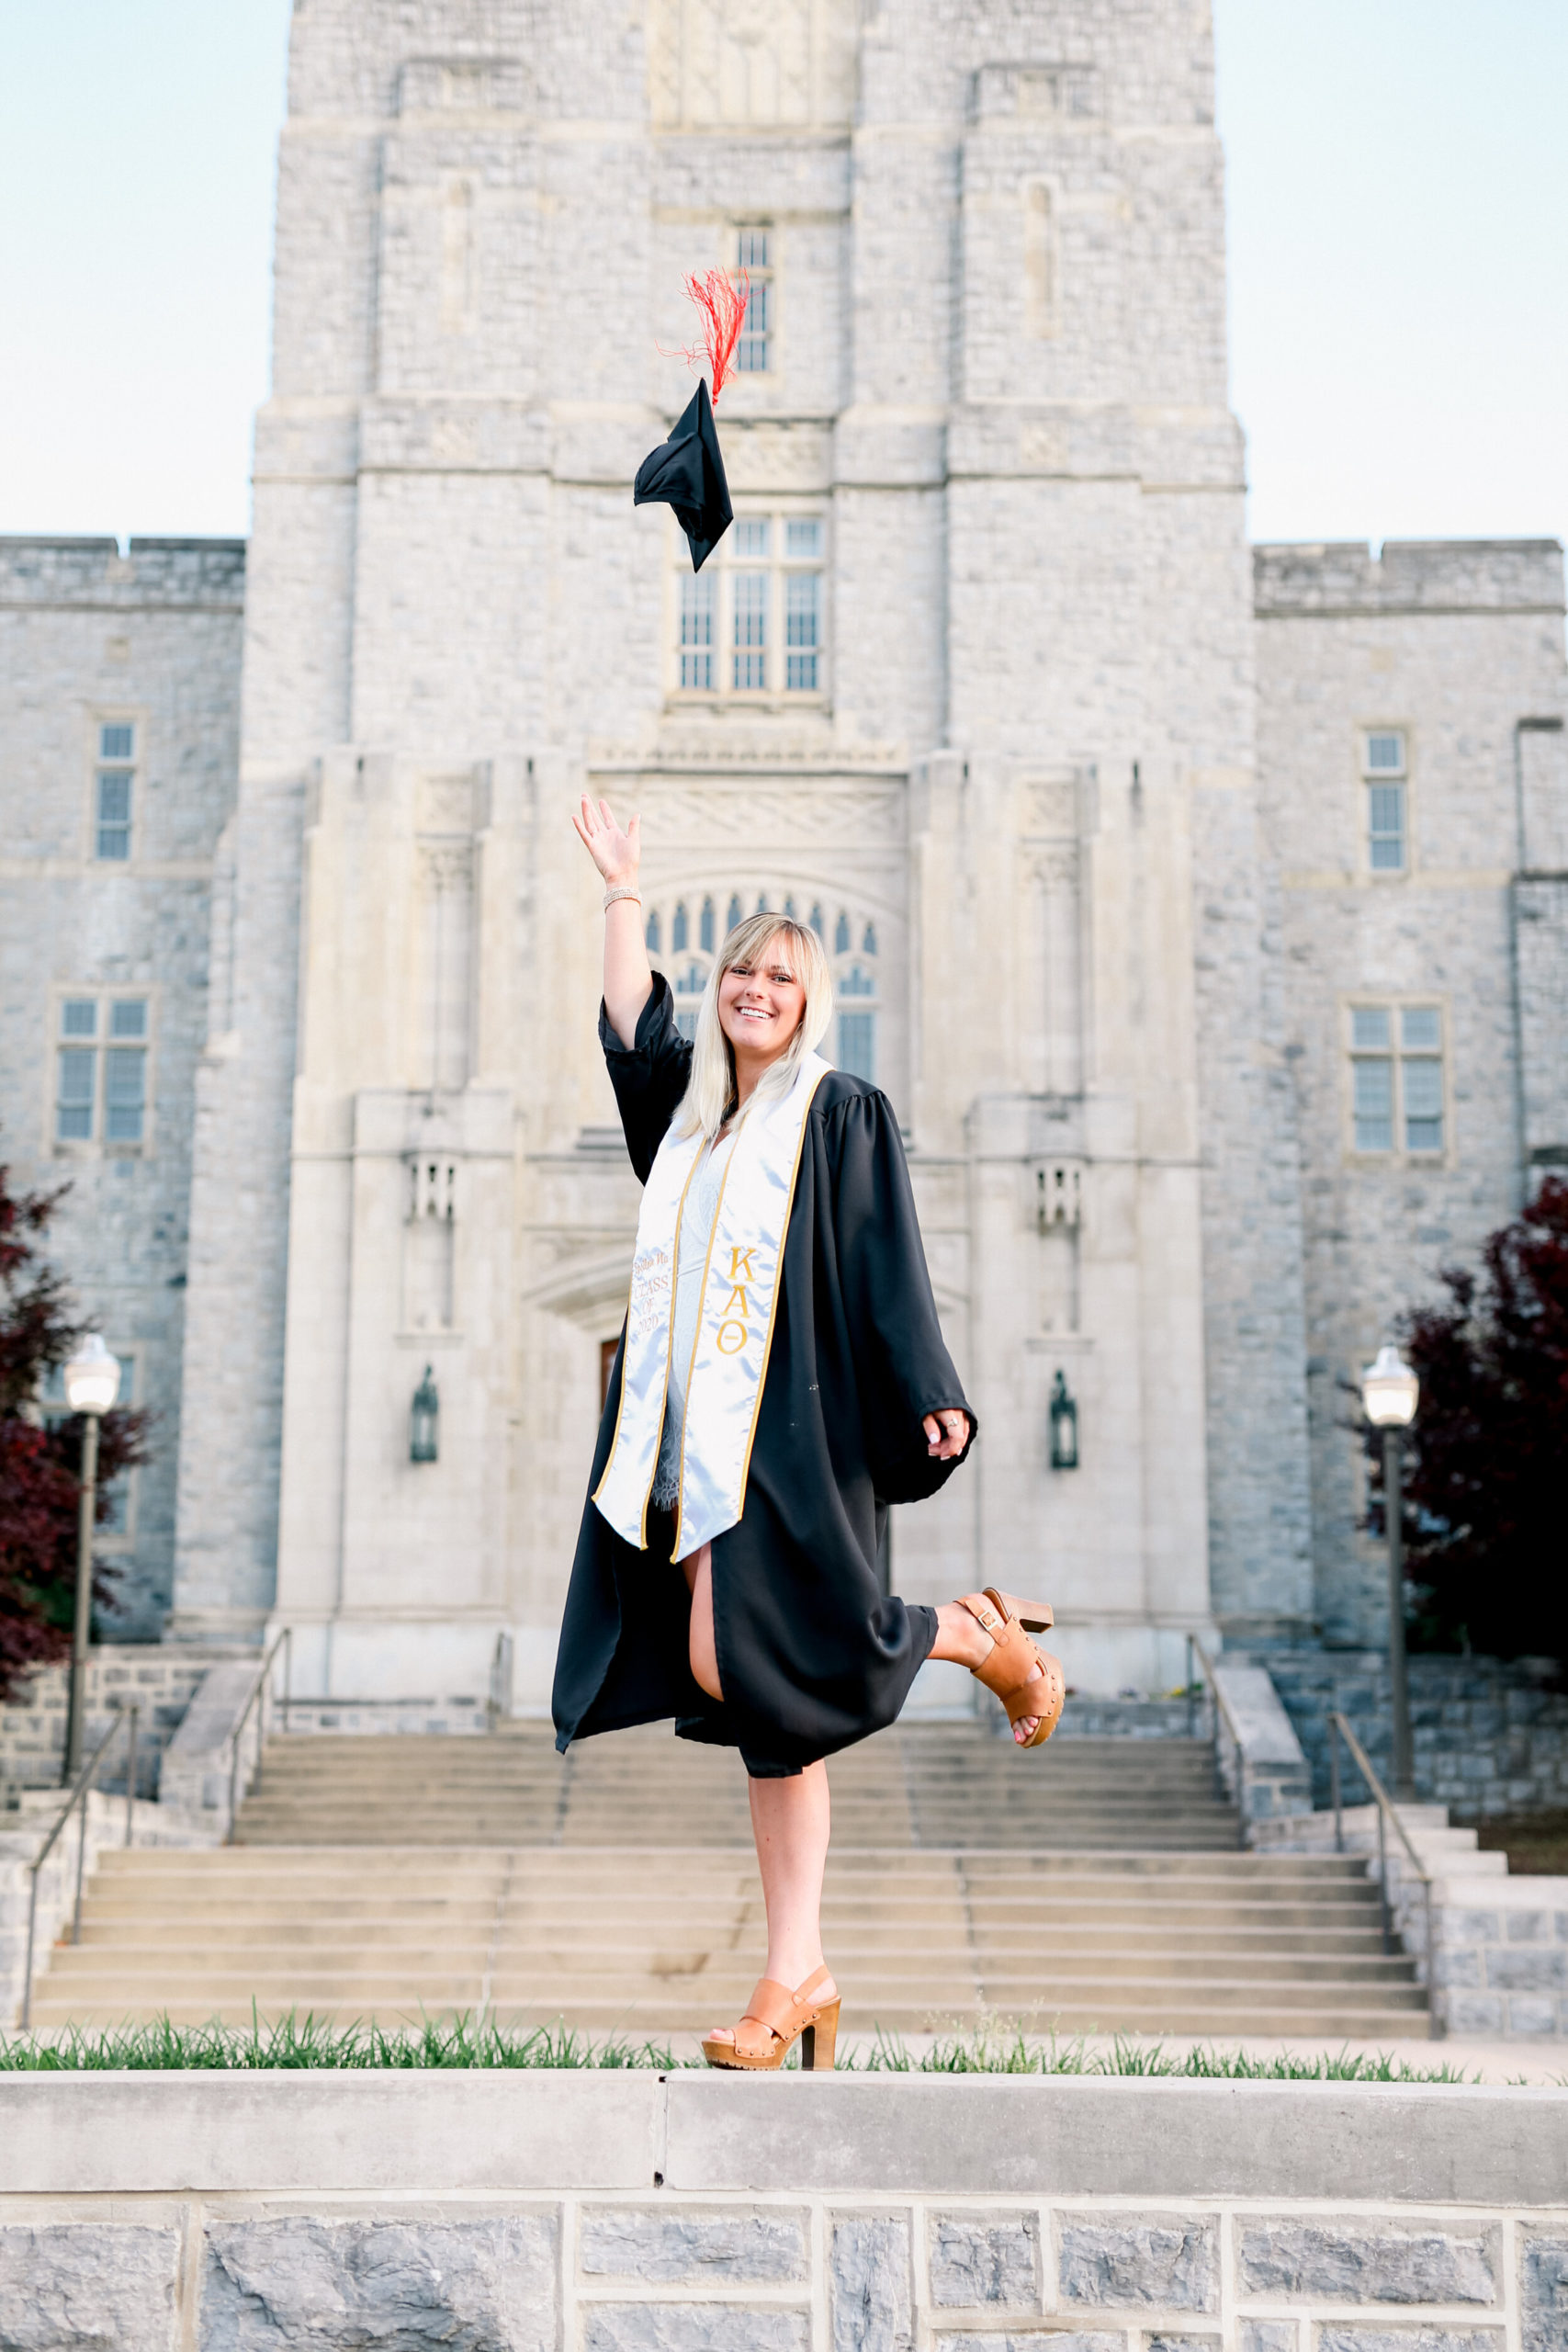 Senior Graduate tossing cap on Virginia Tech’s campus